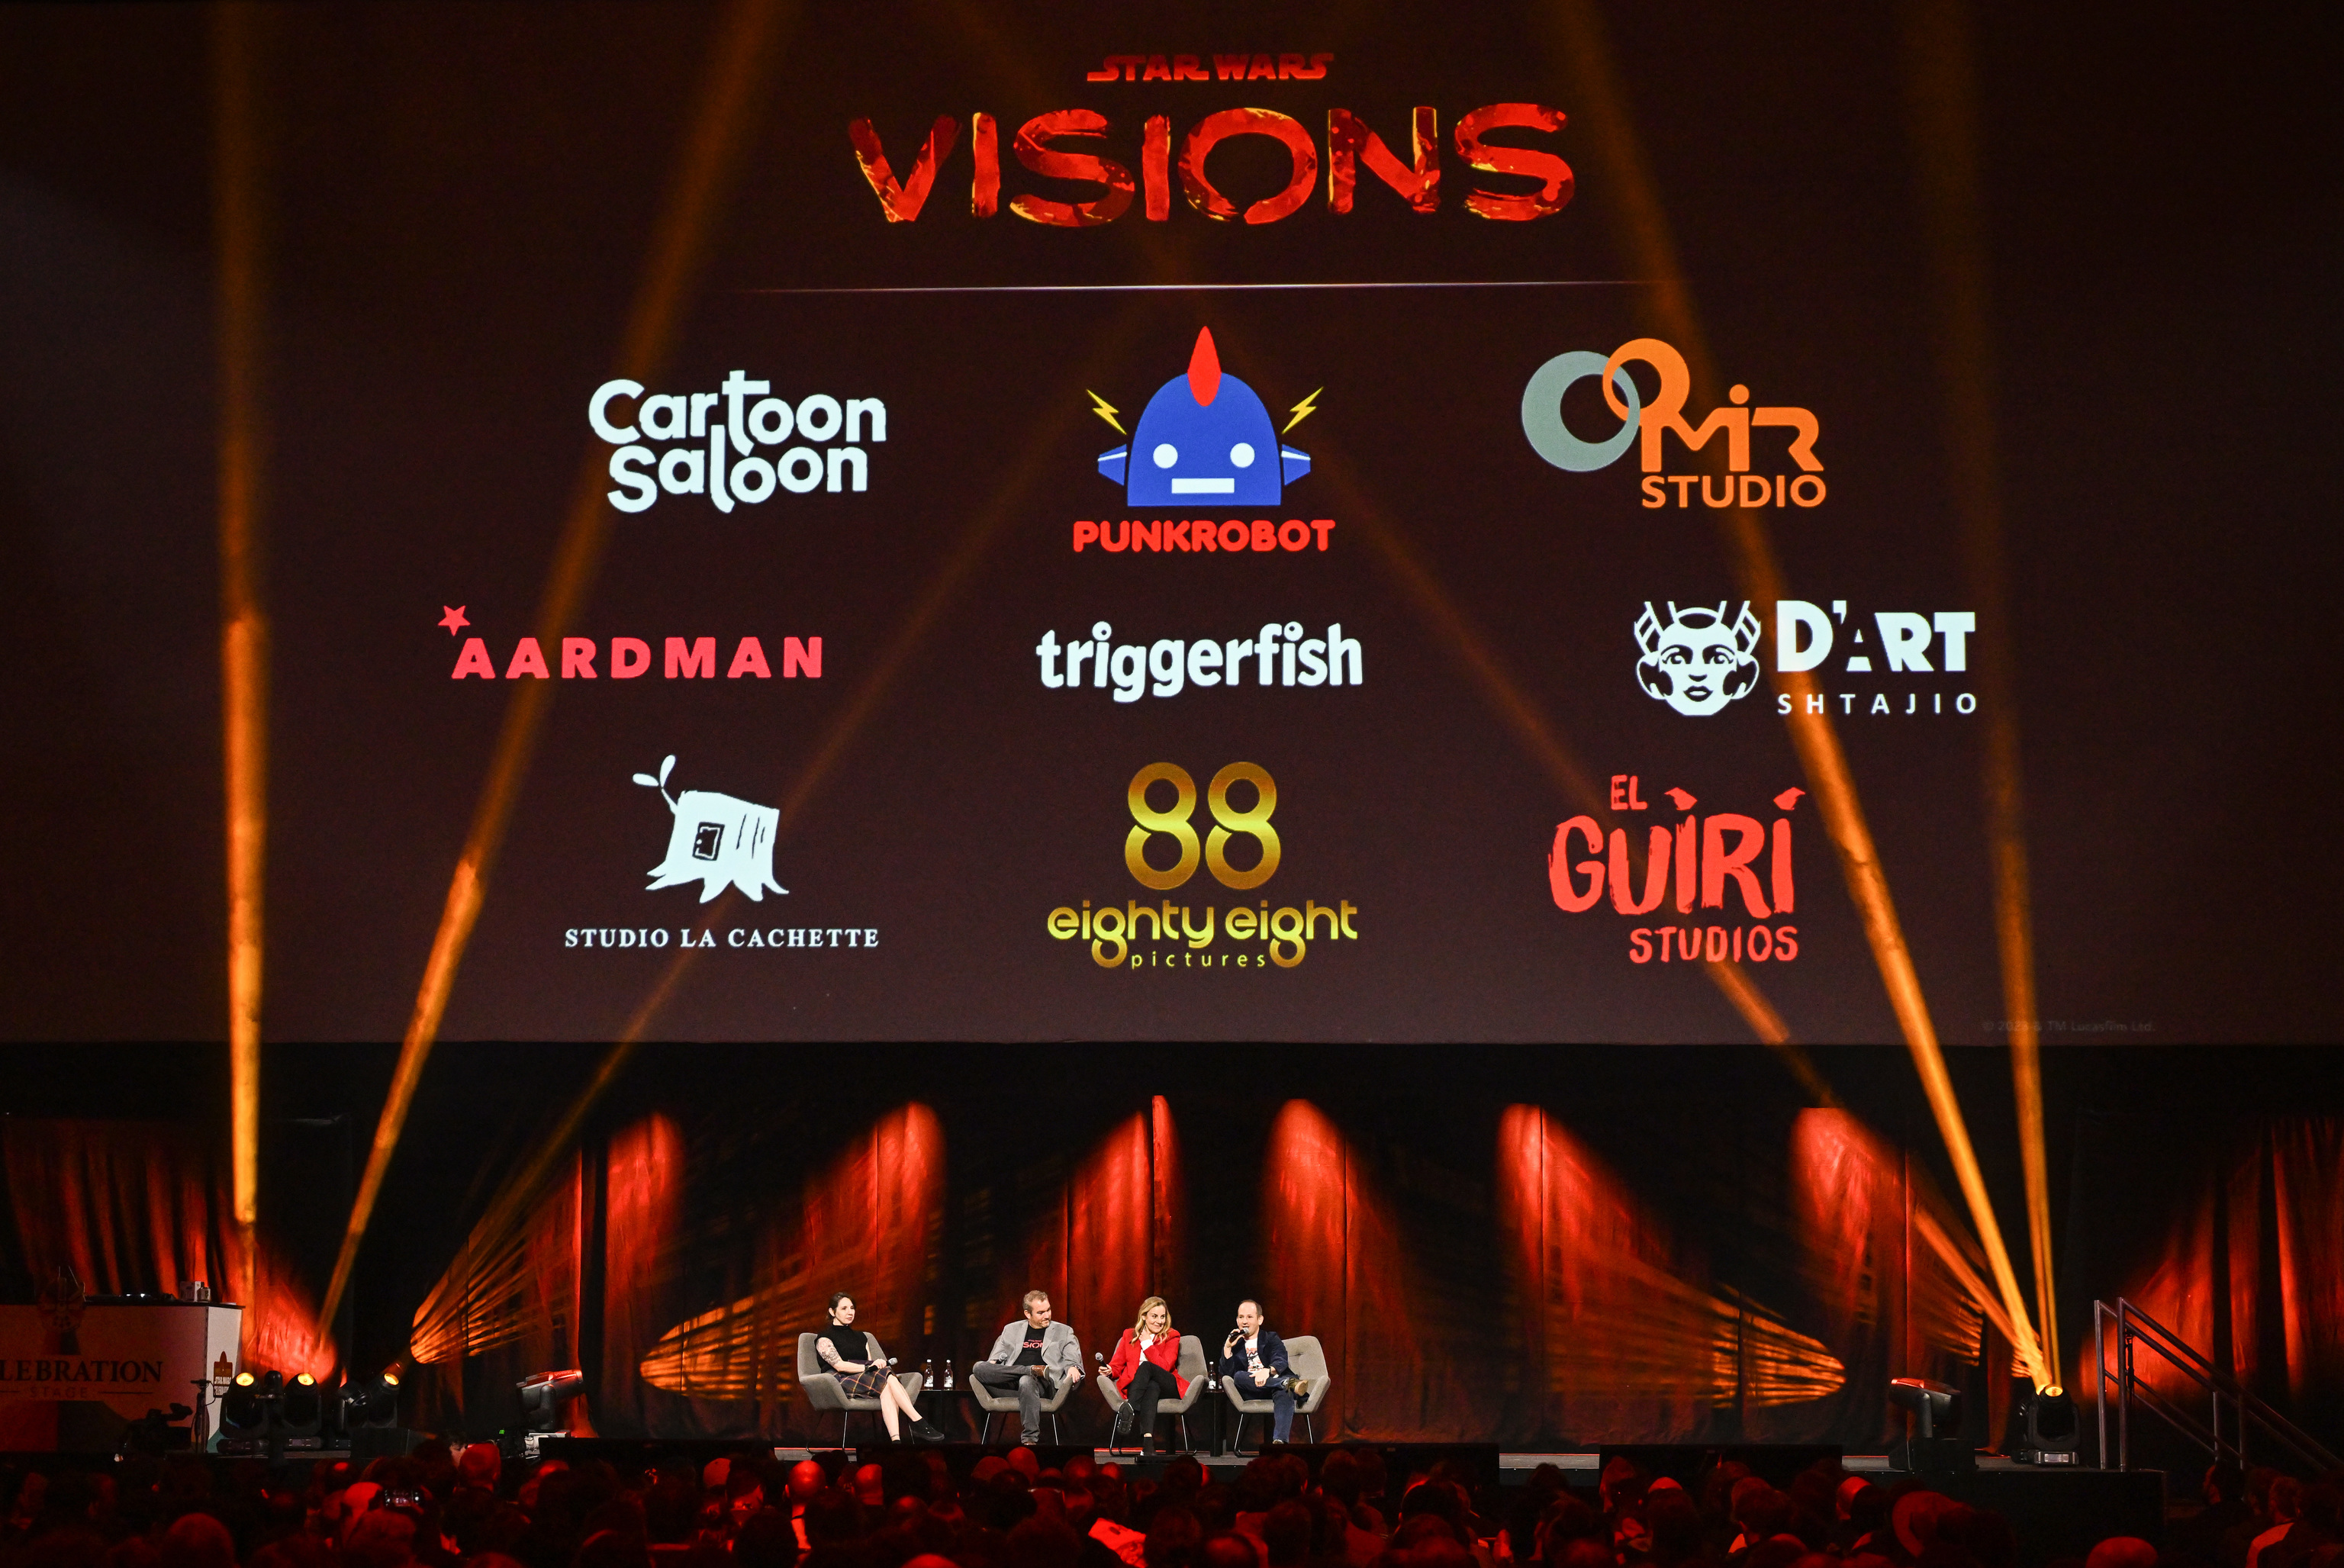 Nueve estudios internacionales de animacin firmarn los cortos de 'Star Wars: Visions Vol. II'.